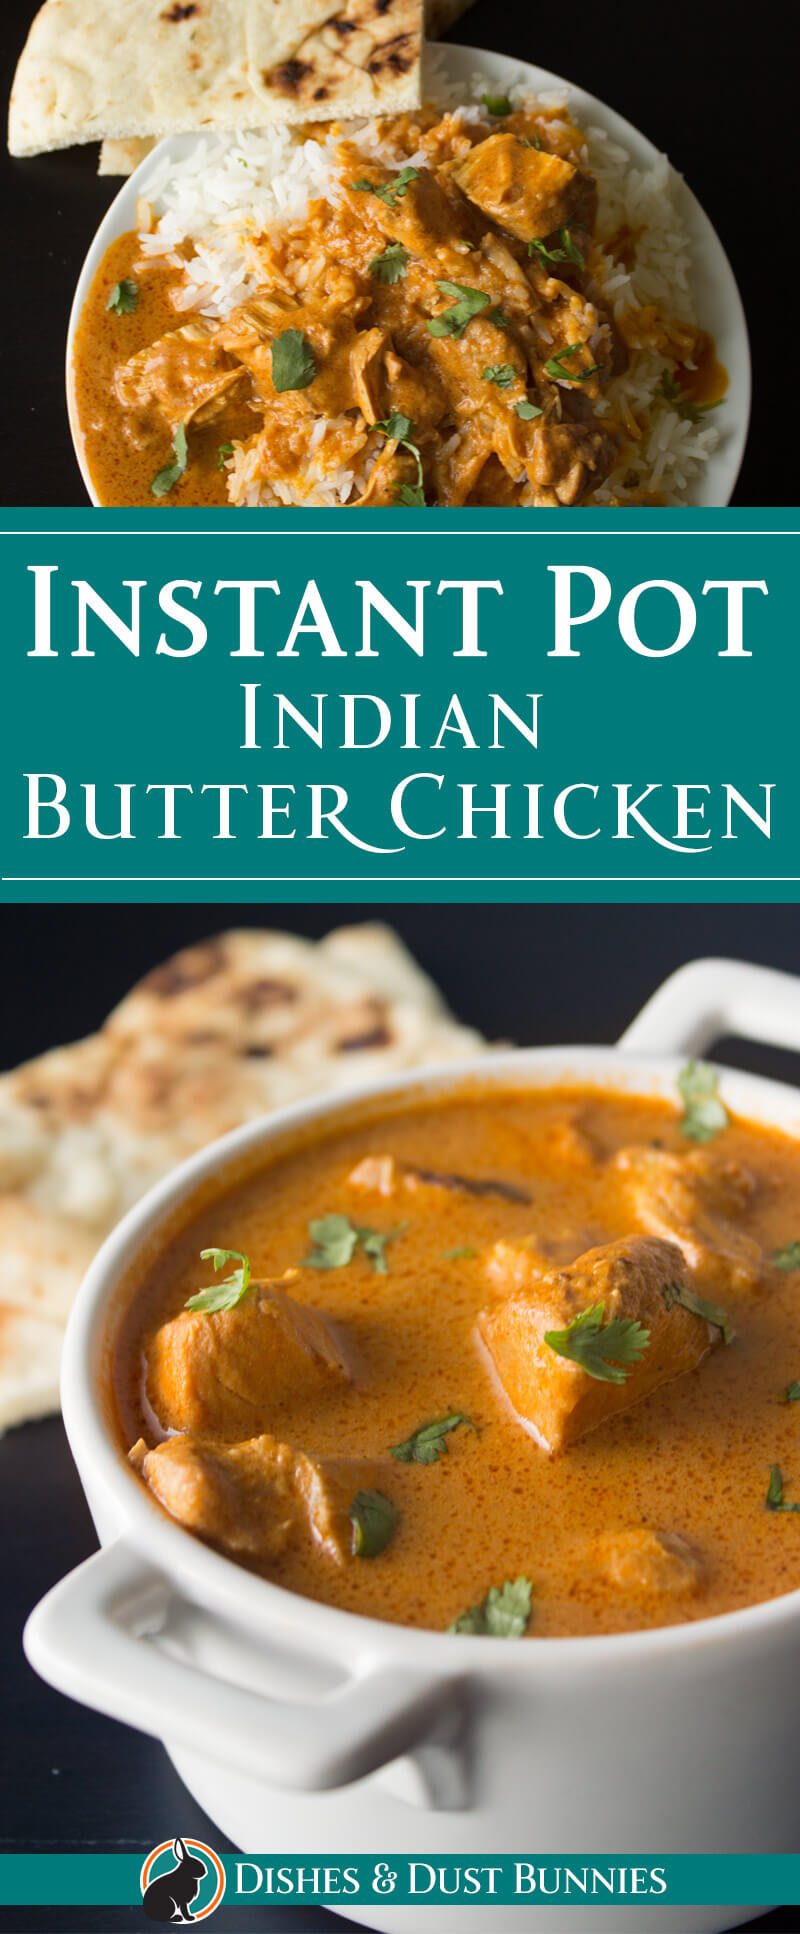 Instant Pot Indian Butter Chicken from dishesandustbunnies.com